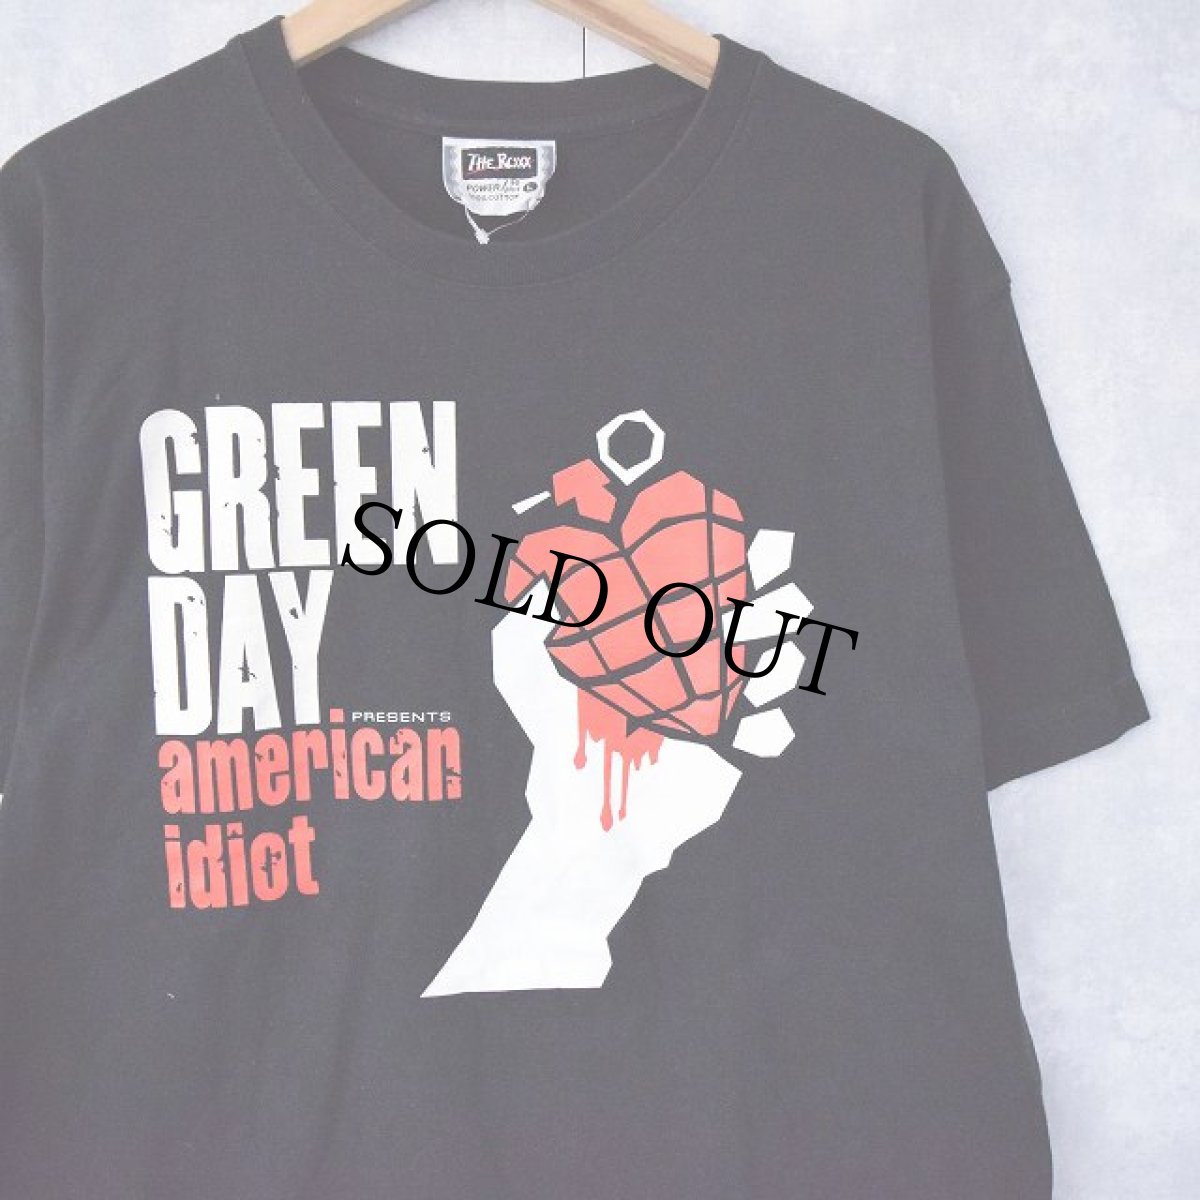 画像1: 2000's GREEN DAY "american idiot" ロックバンドTシャツ L (1)